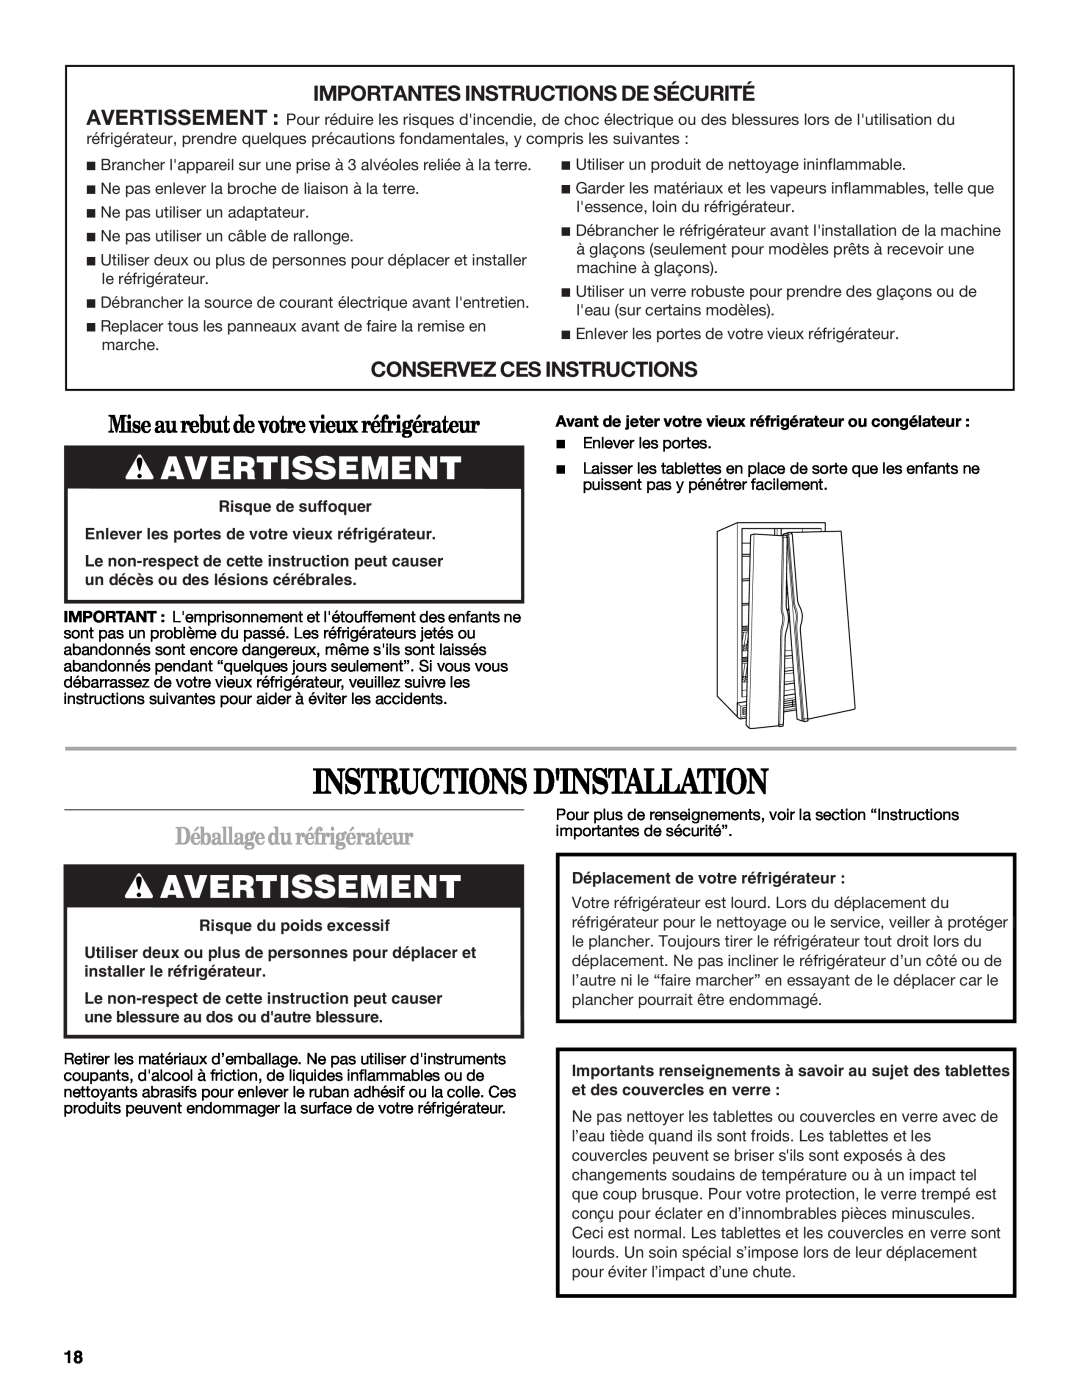 Whirlpool ED2GTKXNQ00 warranty Instructions Dinstallation, Avertissement, Miseau rebutdevotrevieuxréfrigérateur 